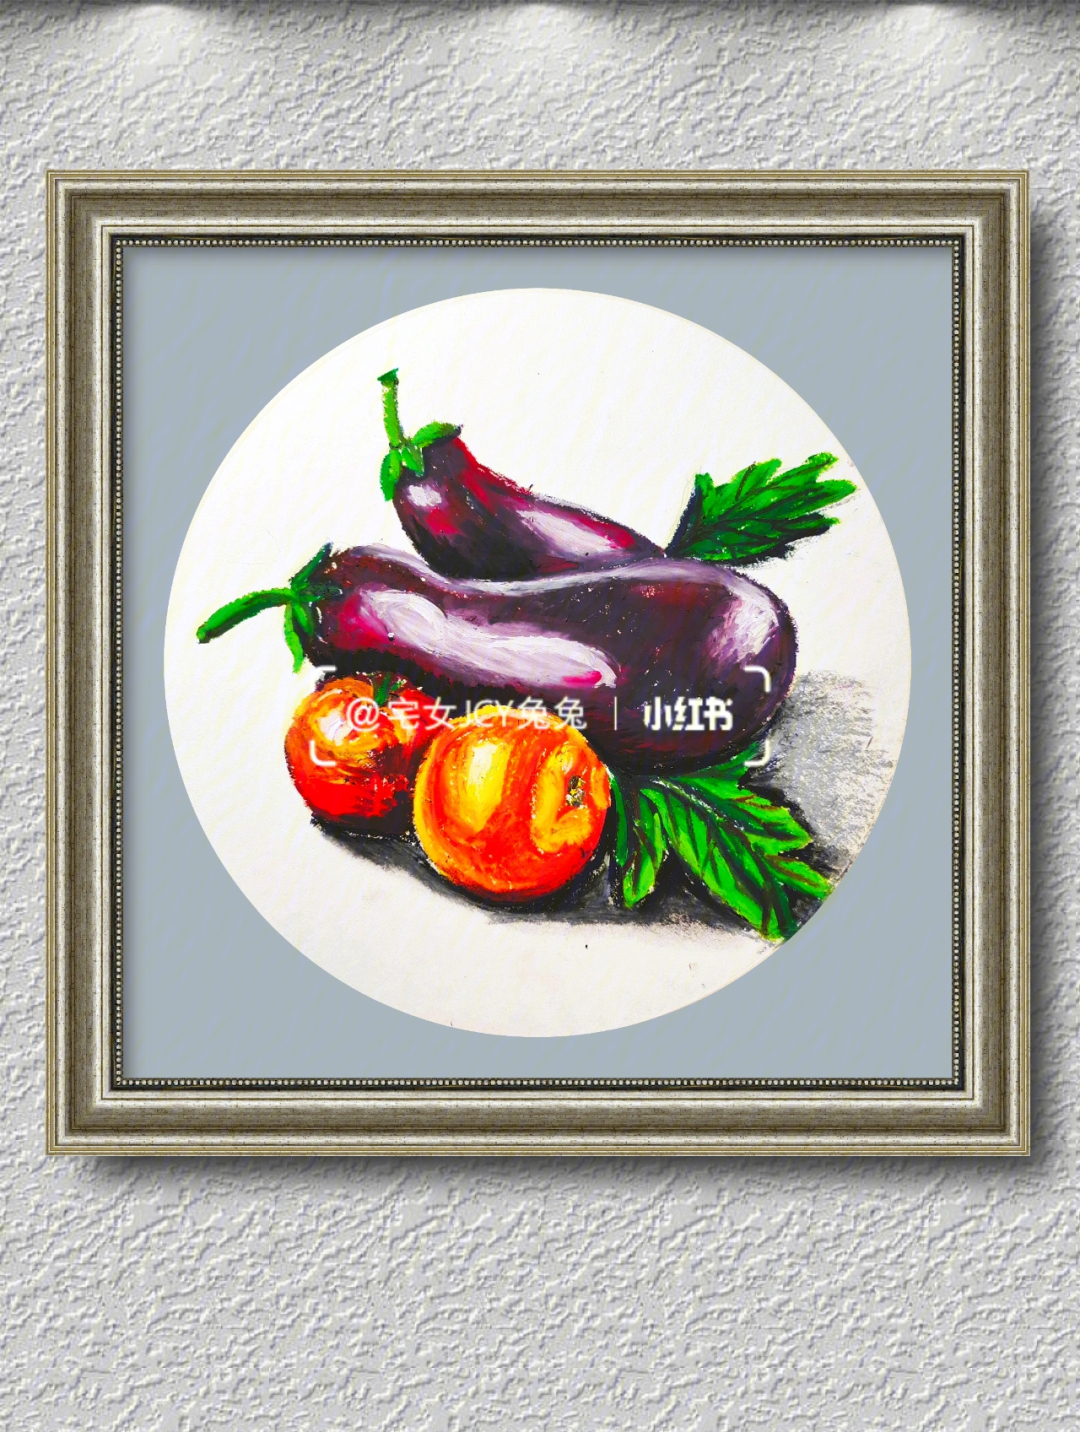 重彩油画棒蔬菜静物写生学生作品展示73